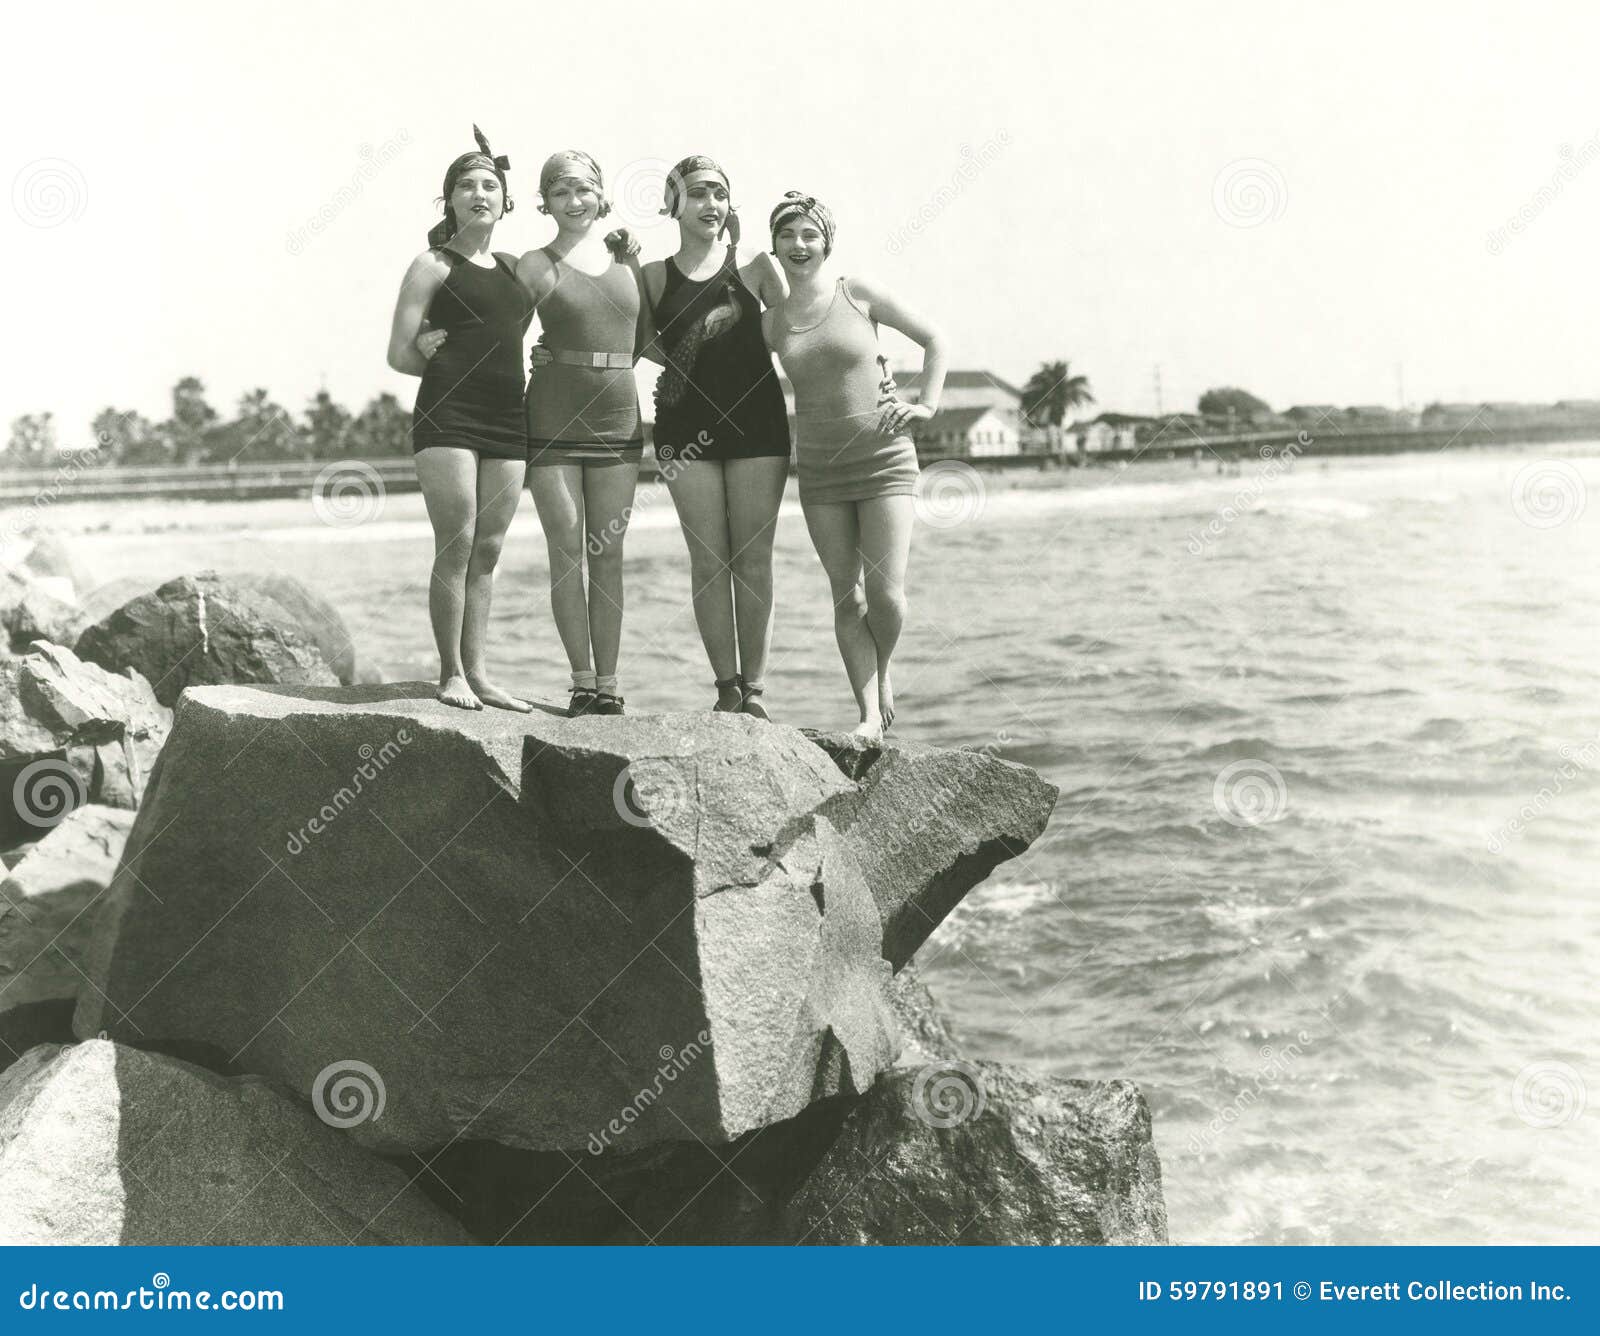 women in bathing suits posing on rock